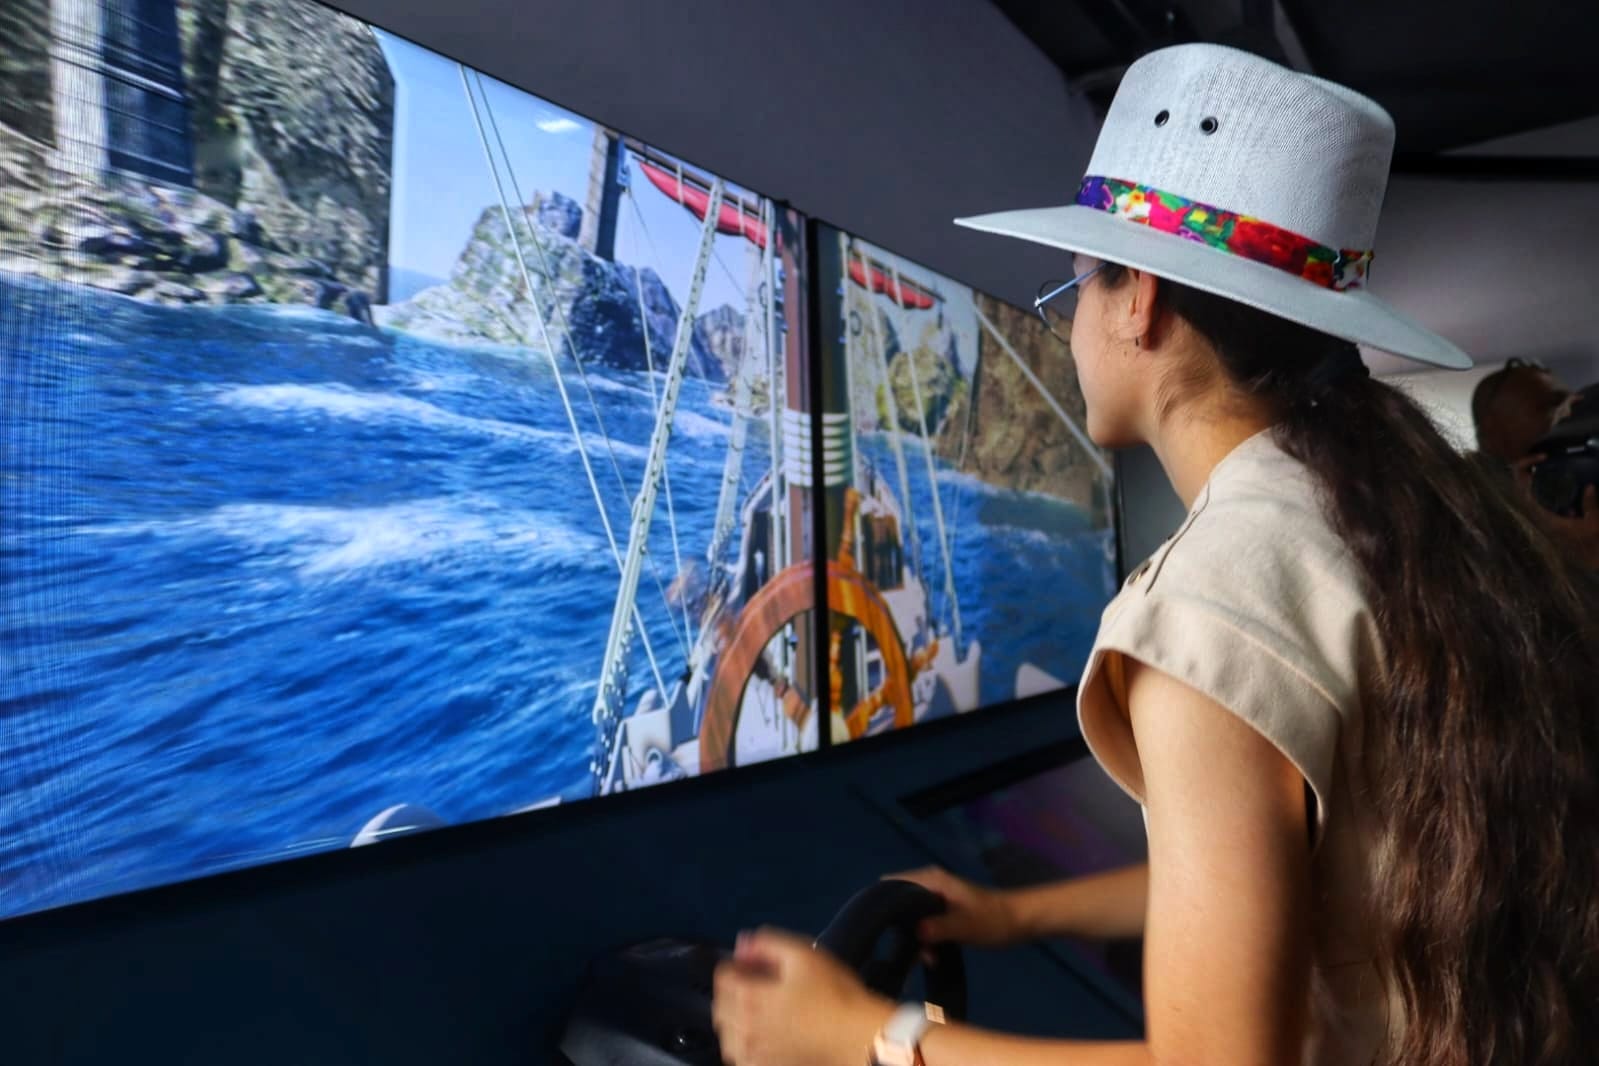 El Barco Utopía en Iztapalapa tiene un simulador de navegación gratuito. FOTO: Twitter @TurismoCDMX